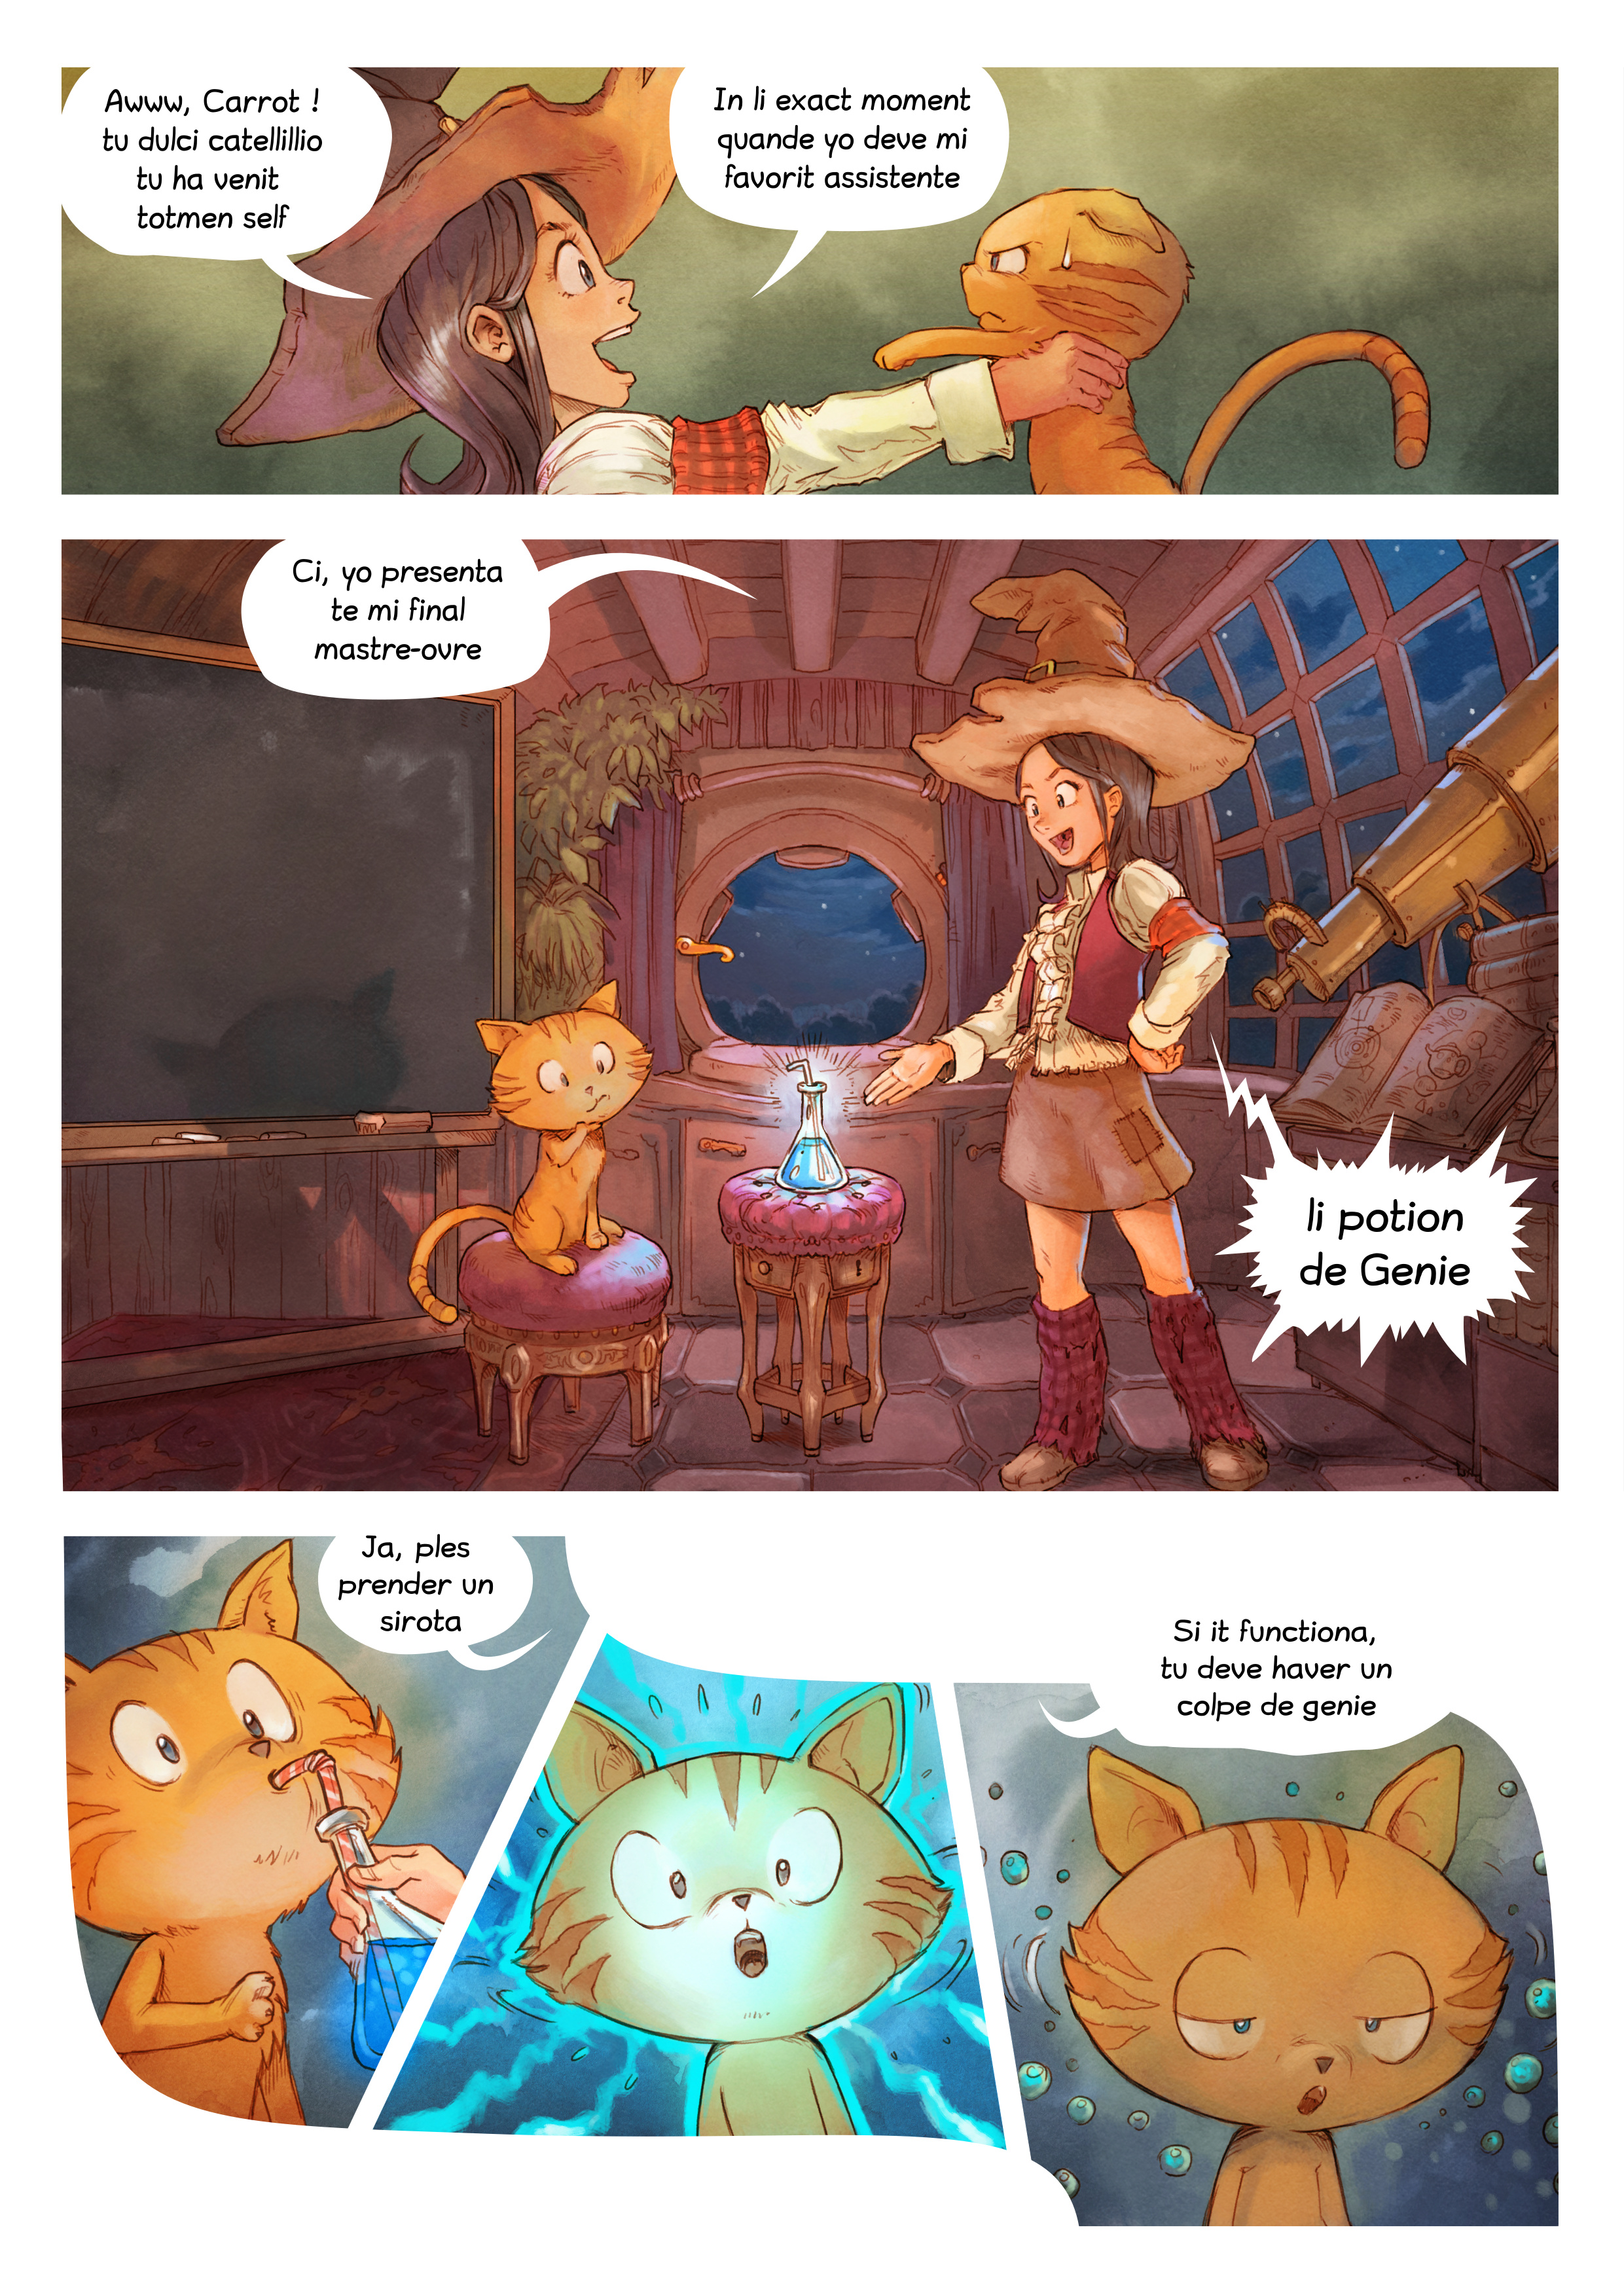 Episode 4: Colpe de Genie, Page 3